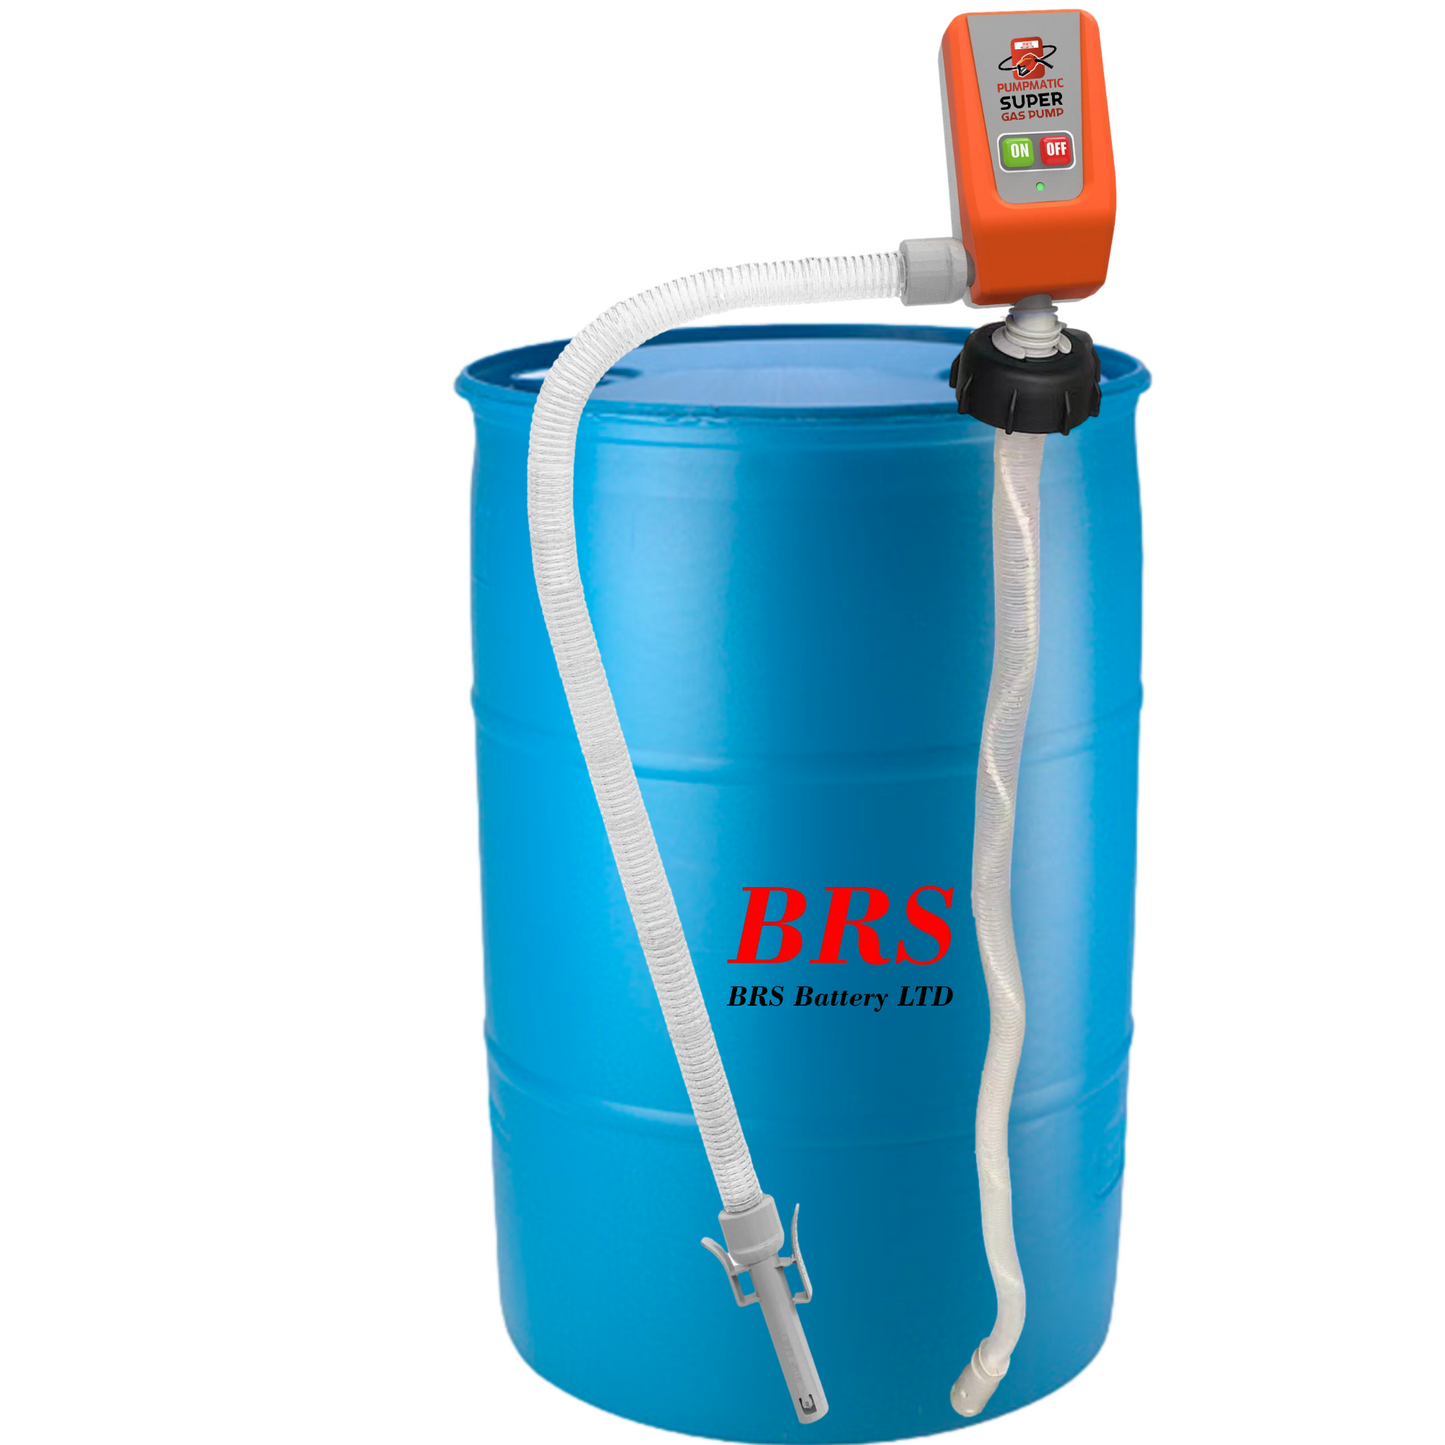 45 Gallon Drum Barrel Pump - Pumpmatic Super Drum Pump - BRS Super Battery